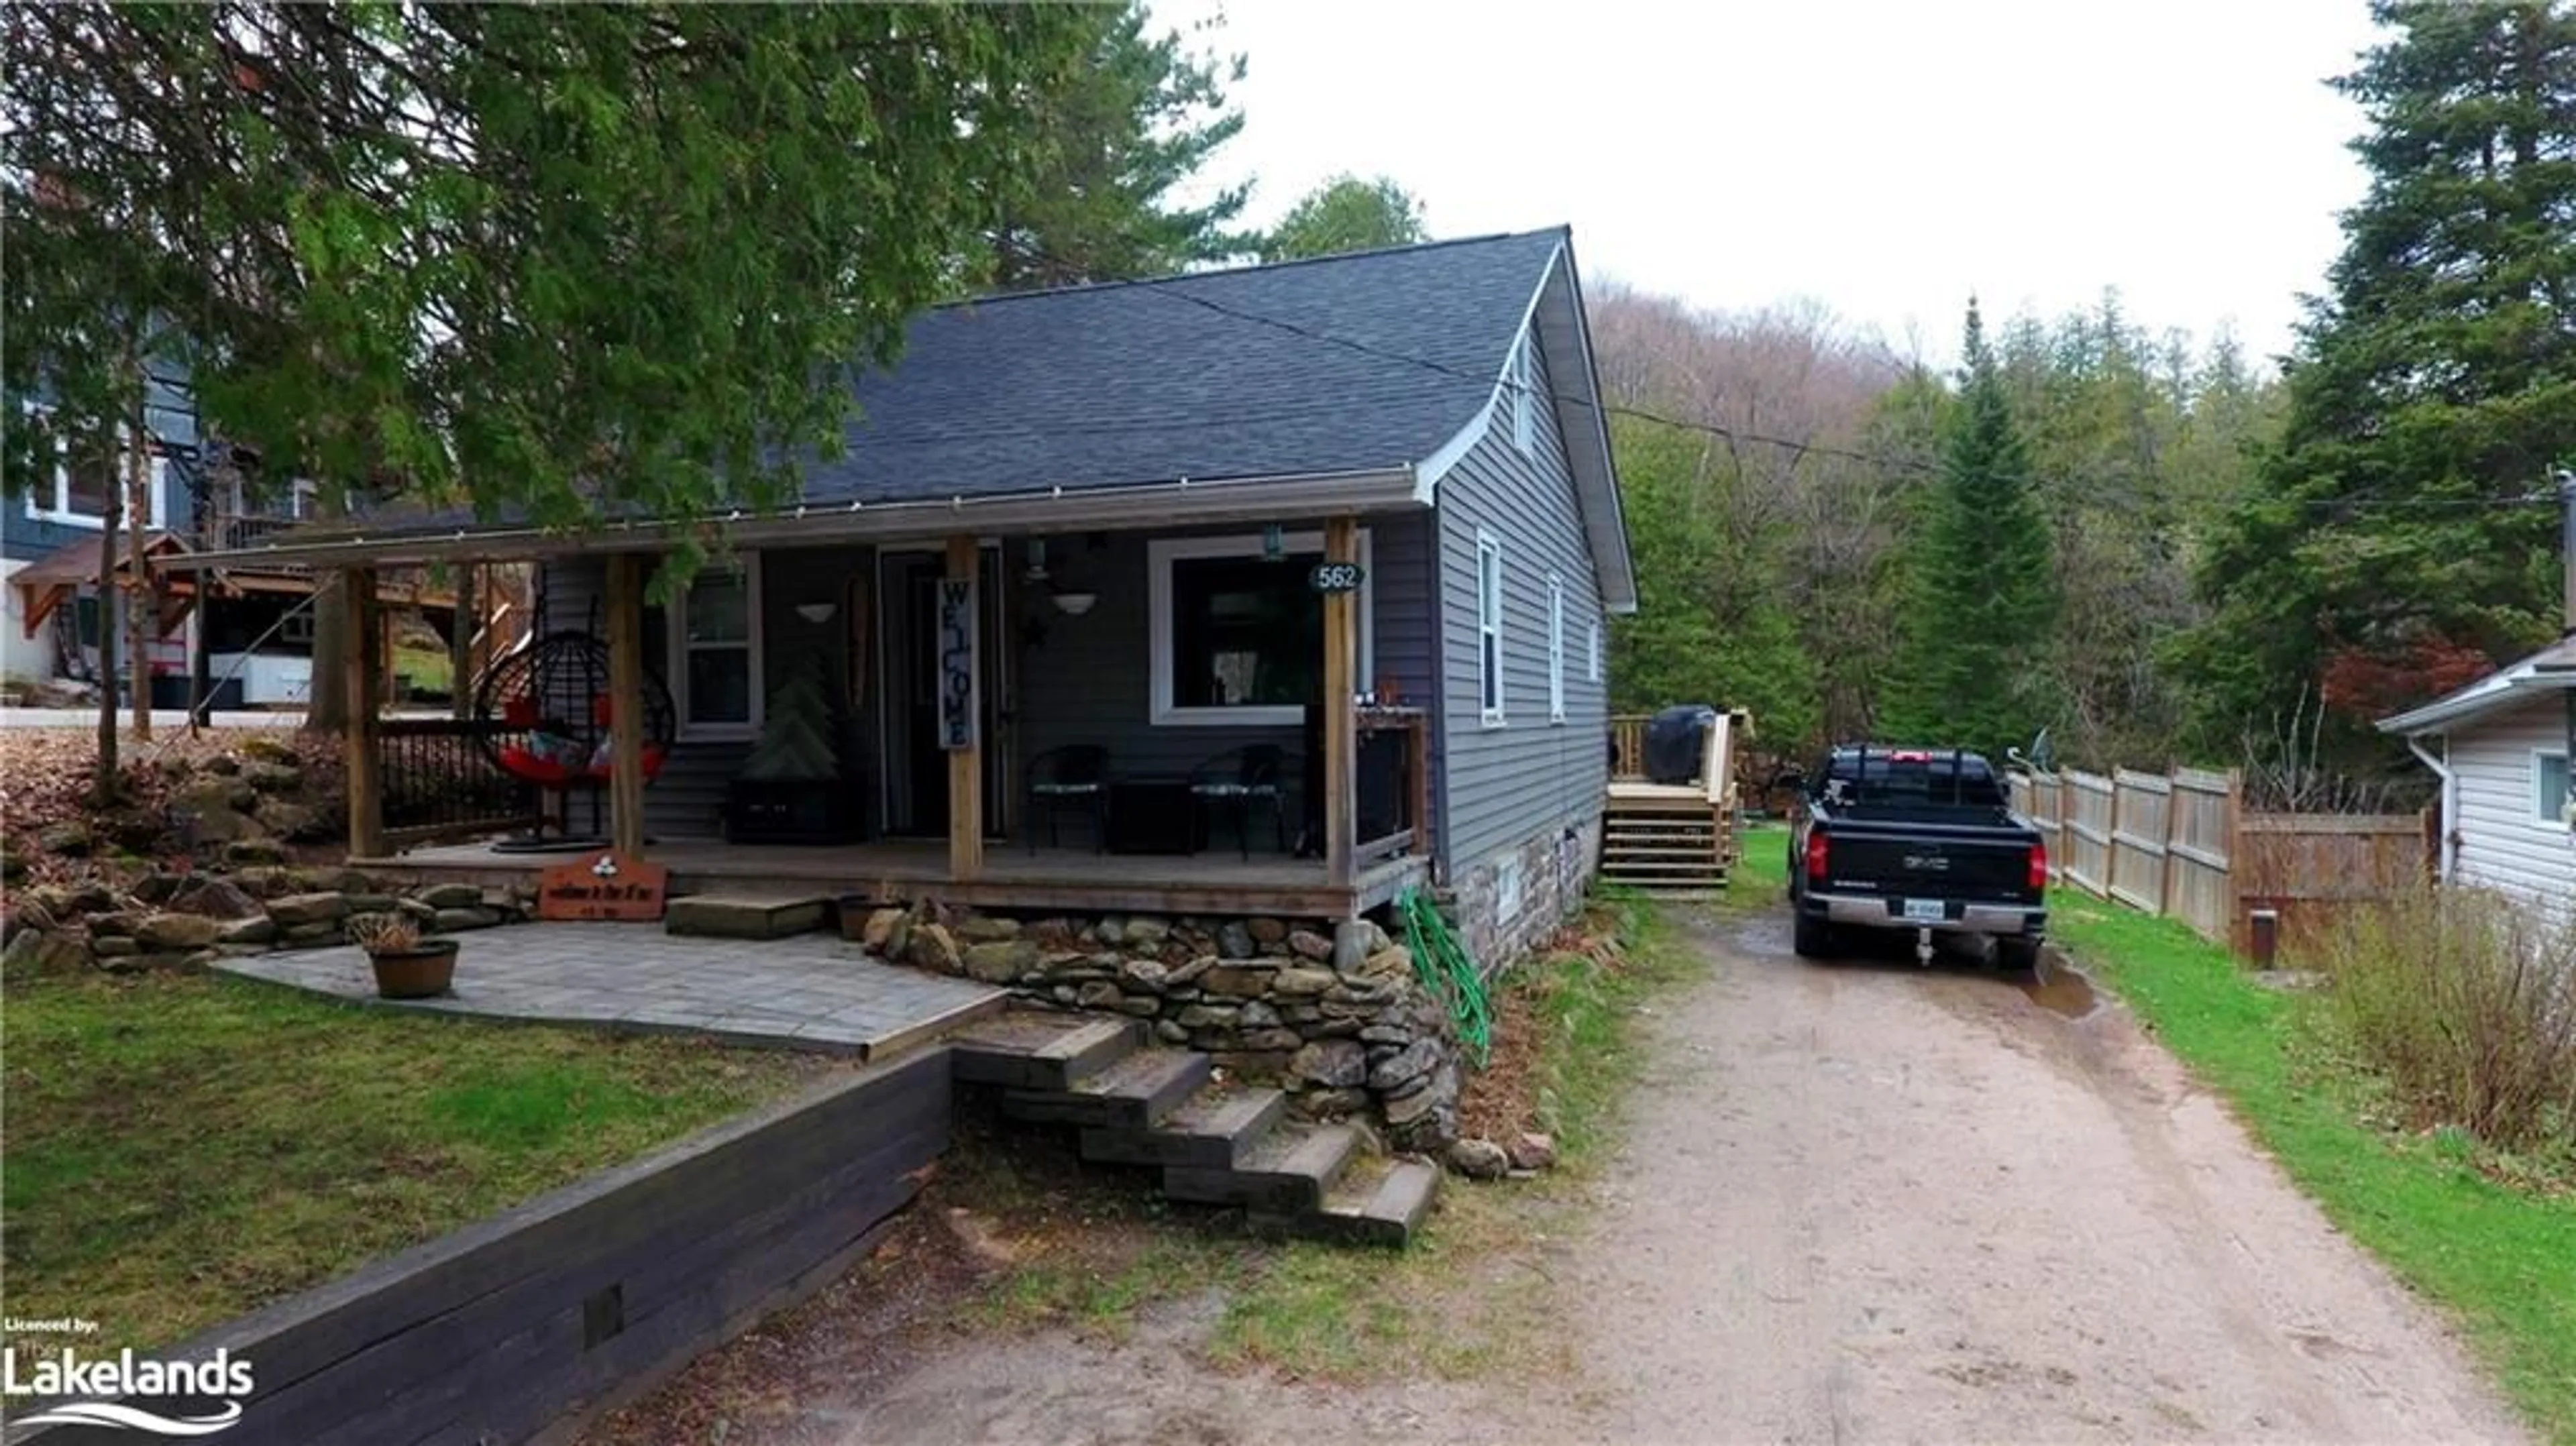 Cottage for 562 Mountain St, Haliburton Ontario K0M 1S0